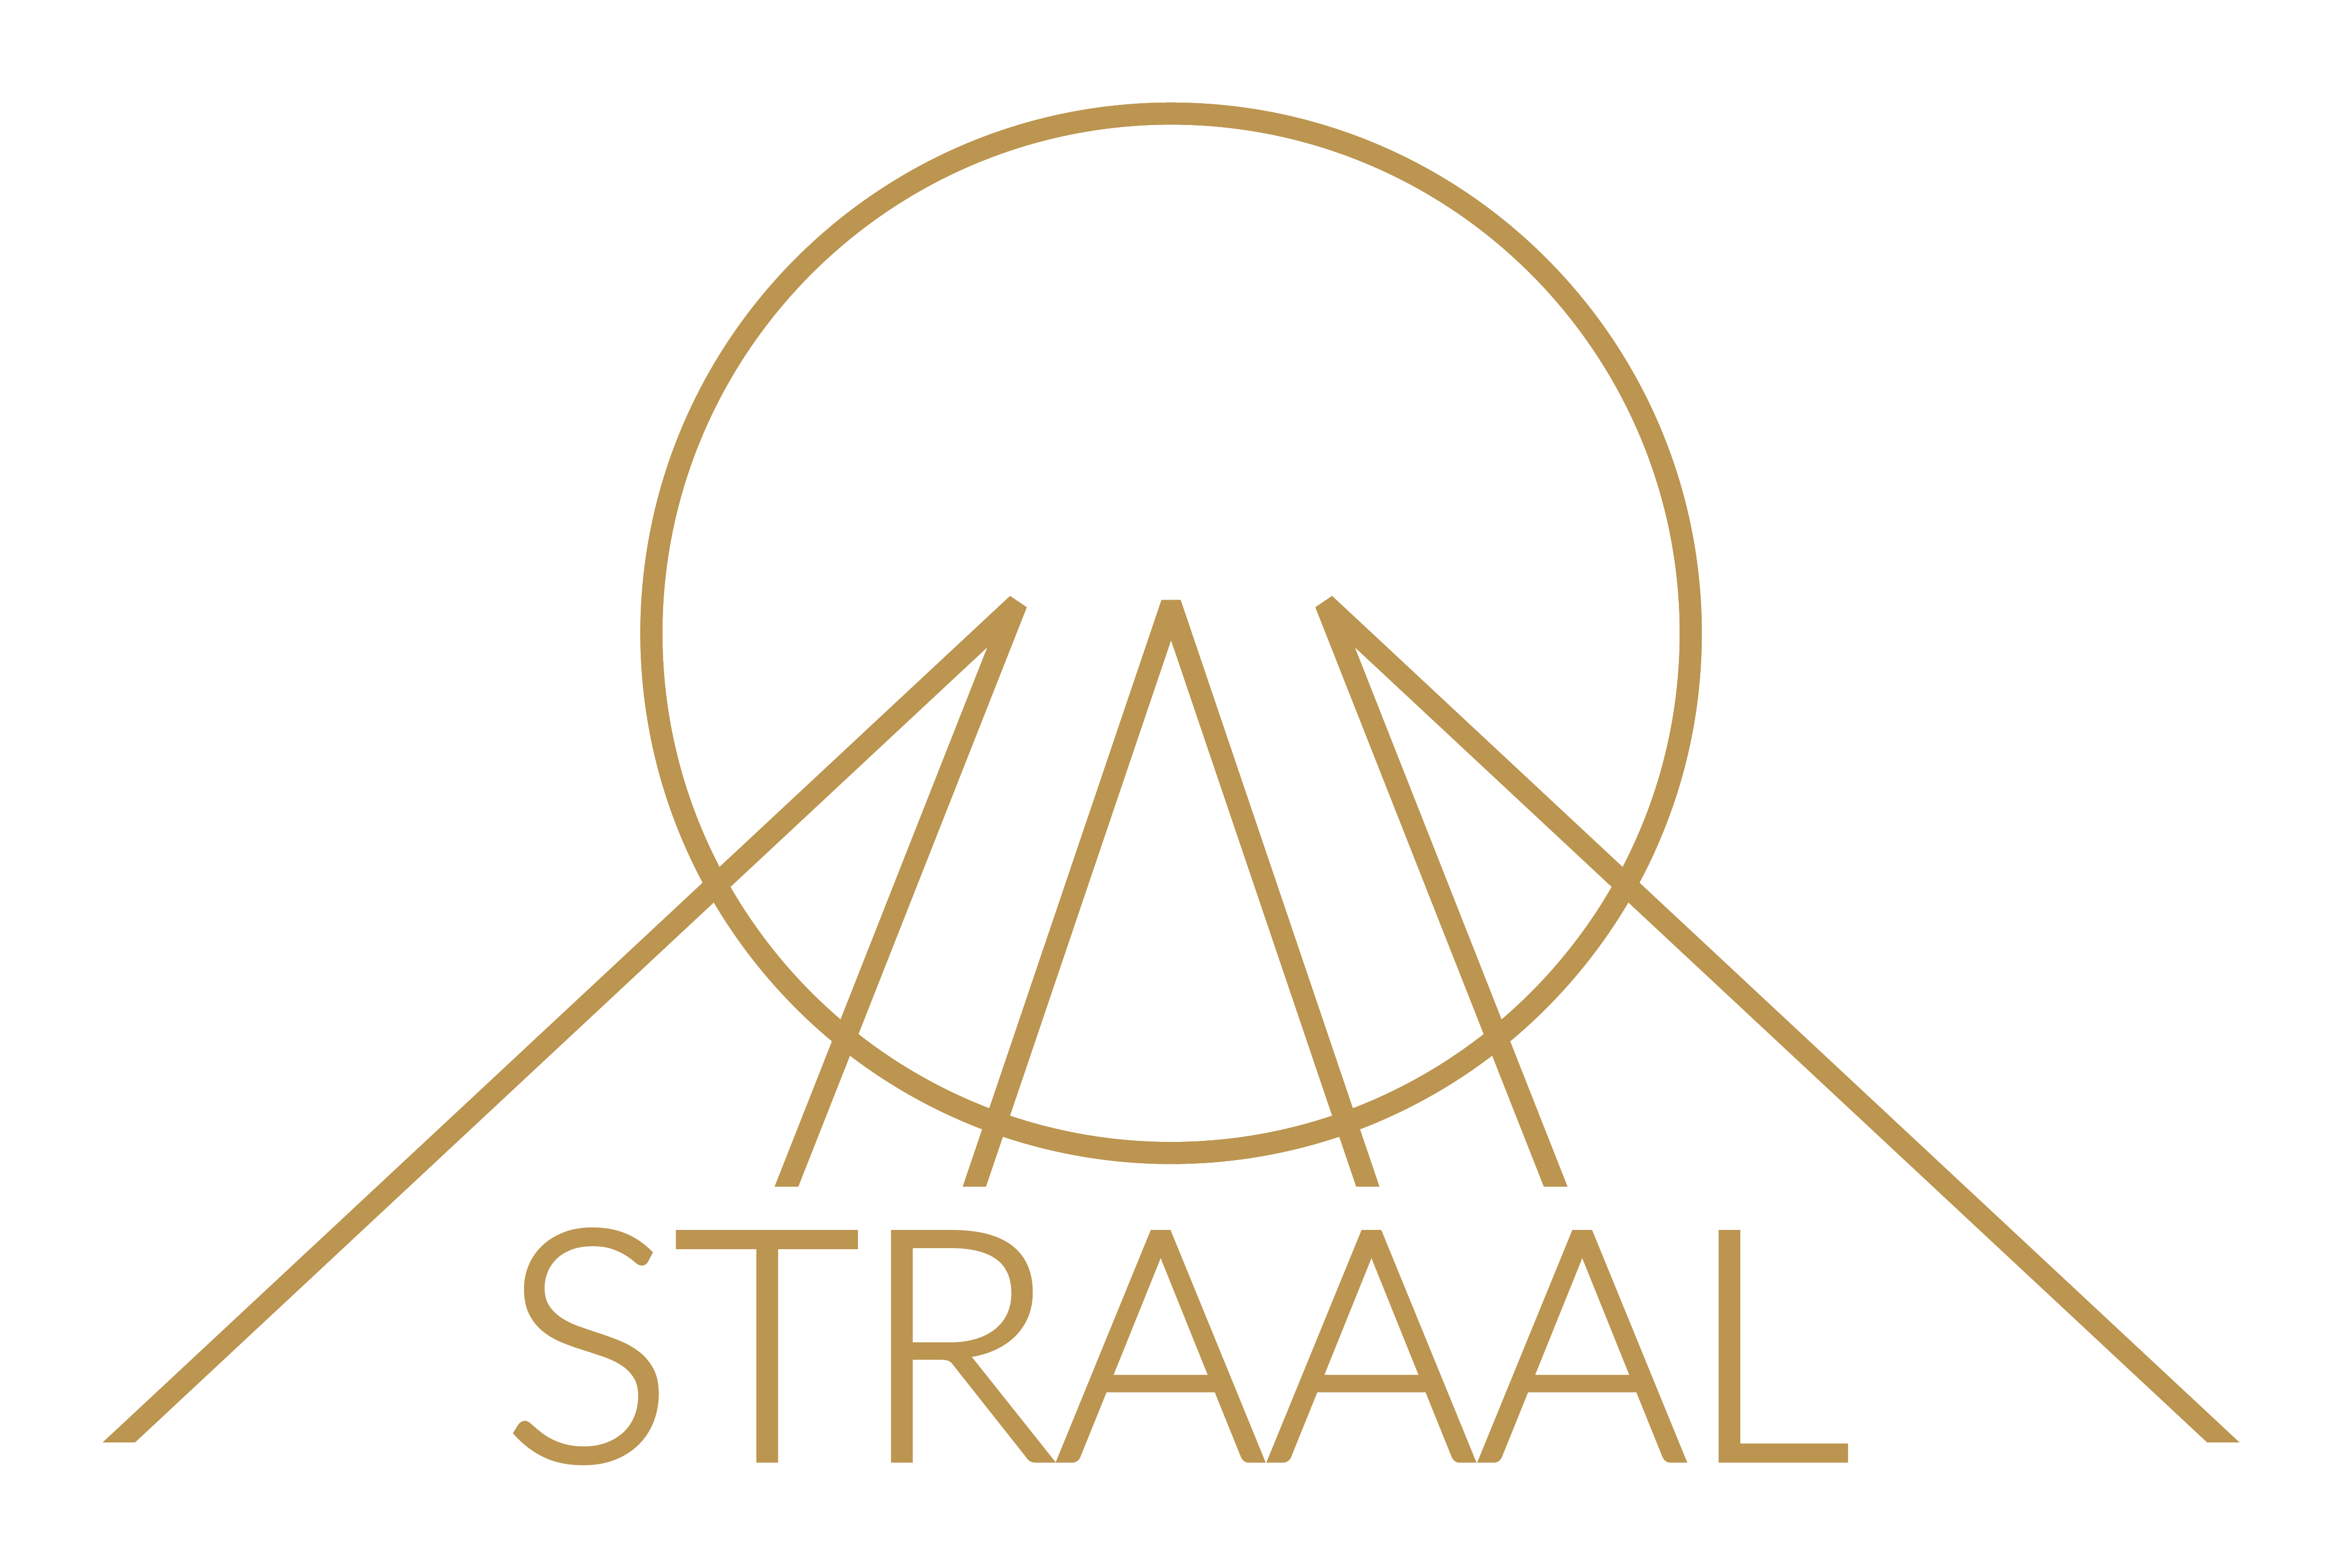 STRAAAL Design